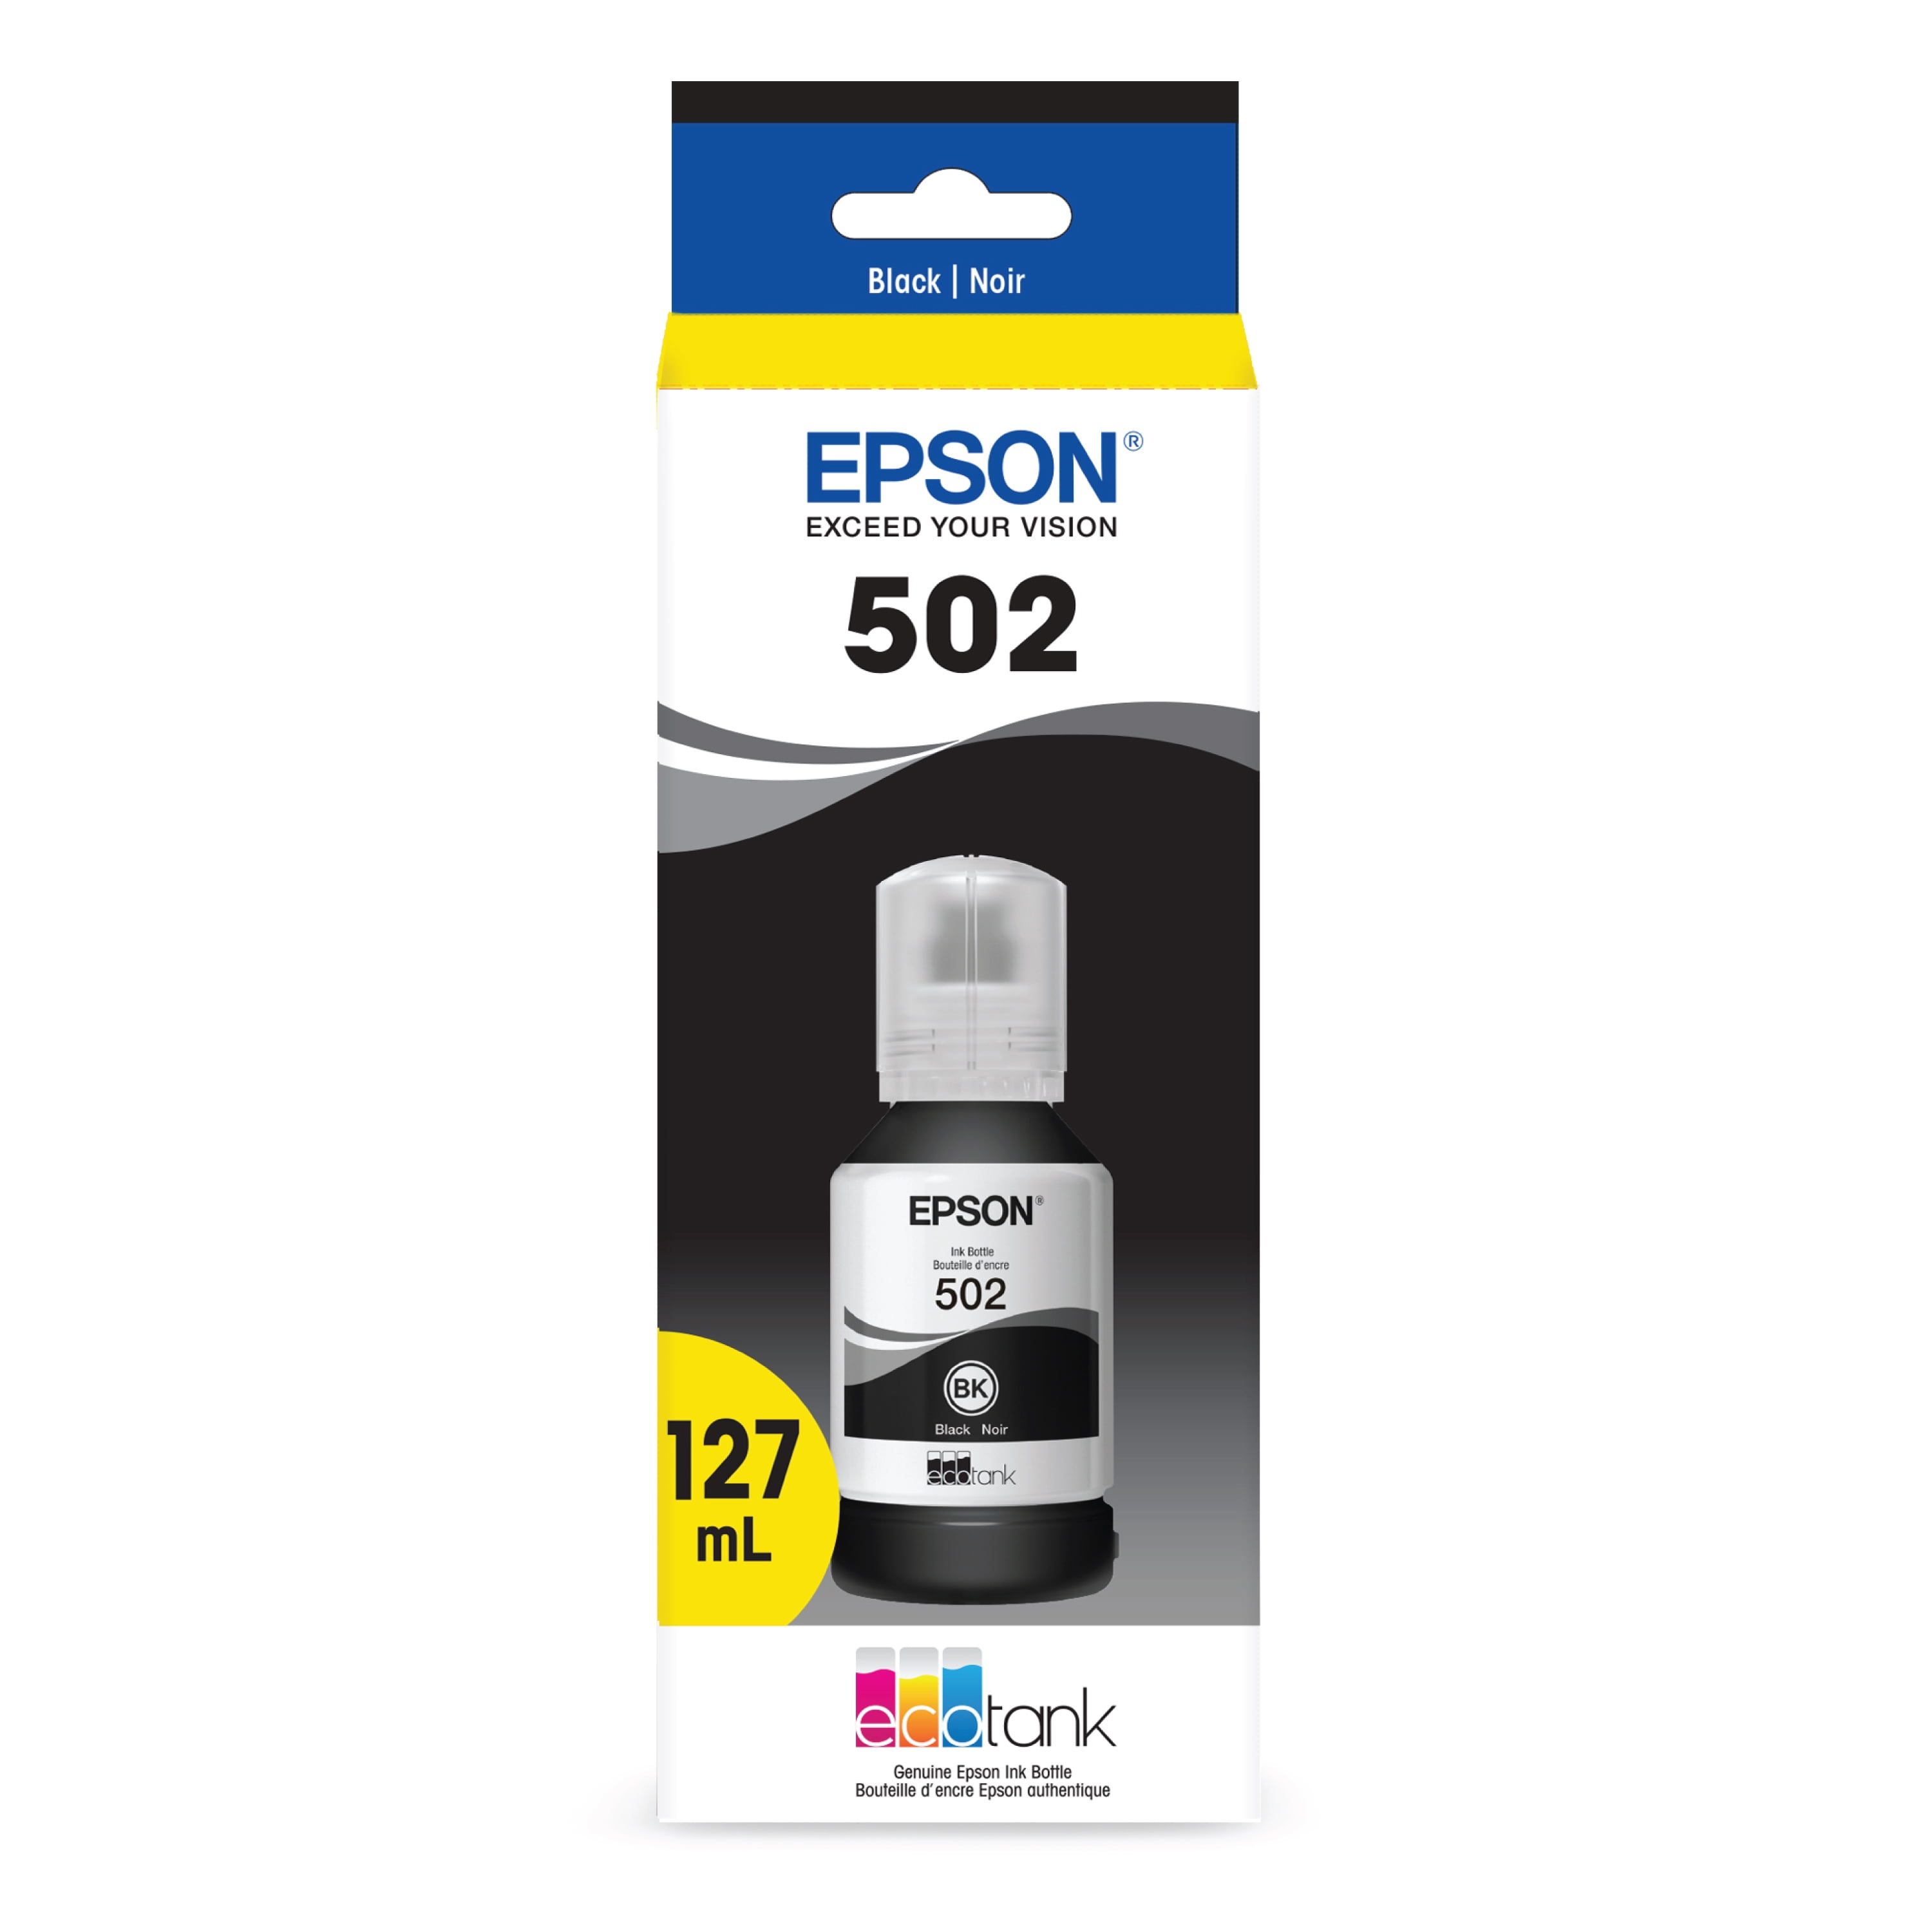 ✓ Cartouche compatible EPSON 502XL noir couleur Noir en stock